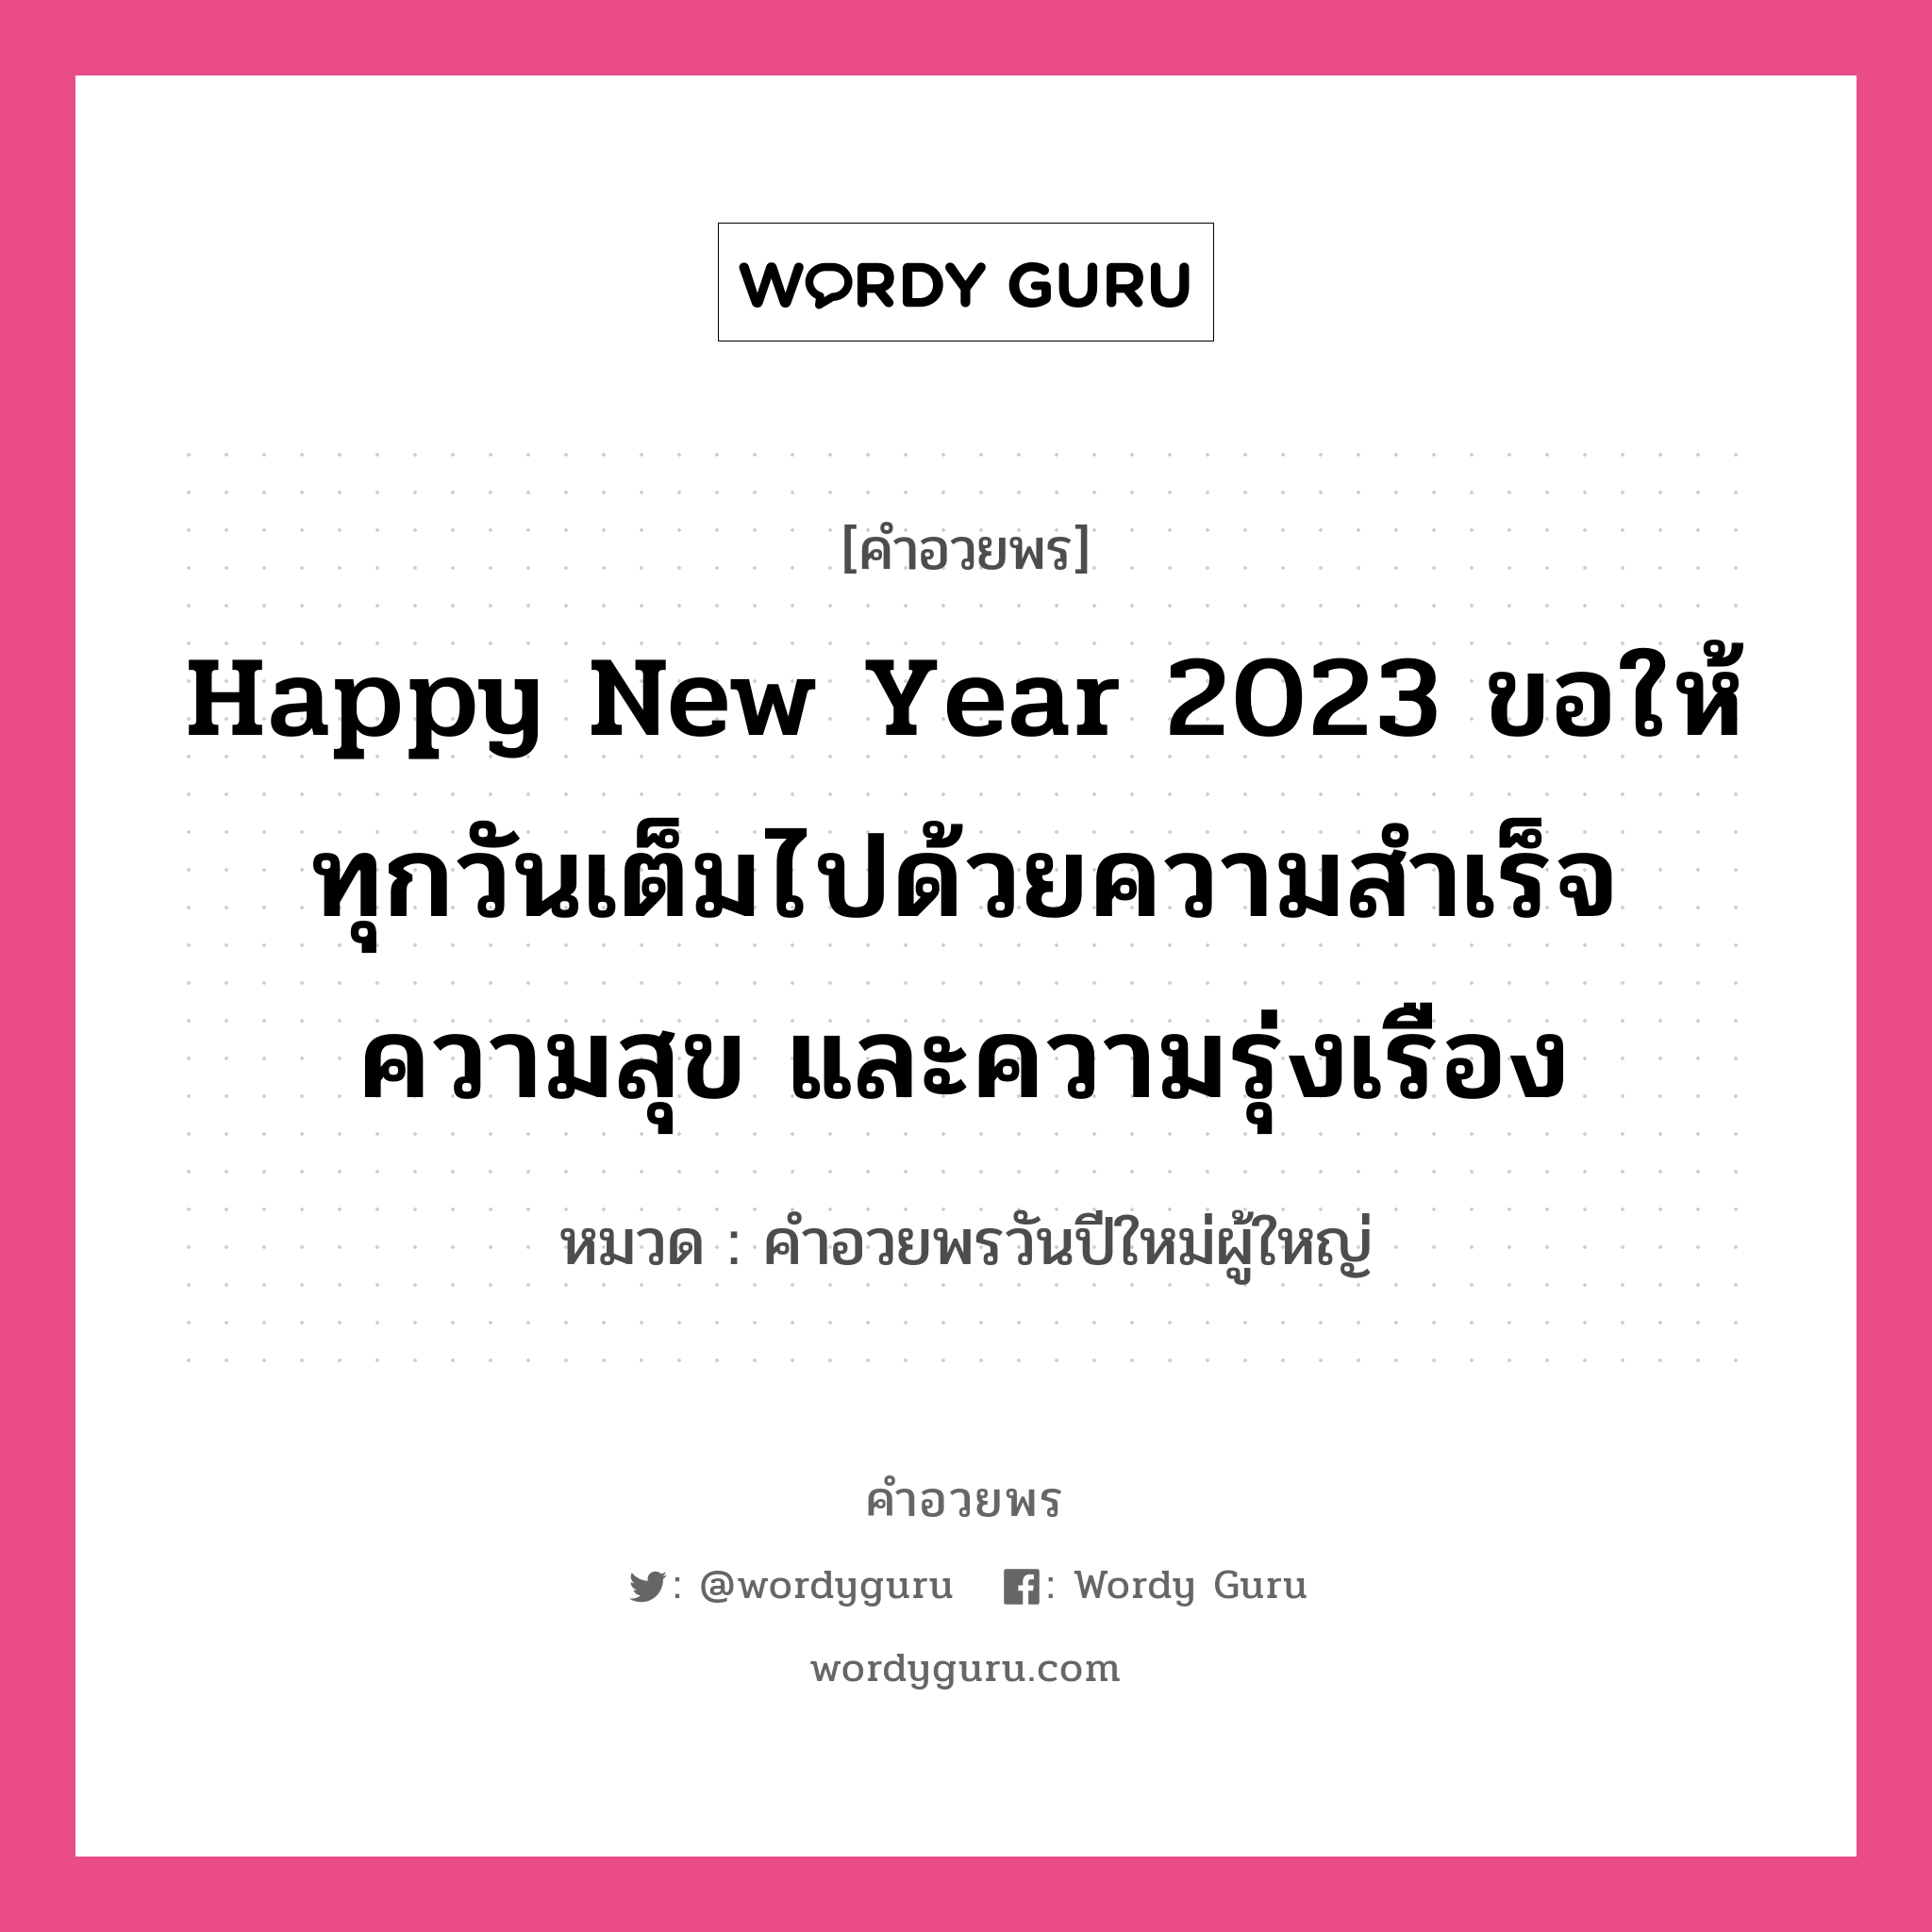 คำอวยพร Happy New Year 2023 ขอให้ทุกวันเต็มไปด้วยความสำเร็จ ความสุข และความรุ่งเรือง คืออะไร?, หมวด คำอวยพรวันปีใหม่ผู้ใหญ่ หมวด คำอวยพรวันปีใหม่ผู้ใหญ่